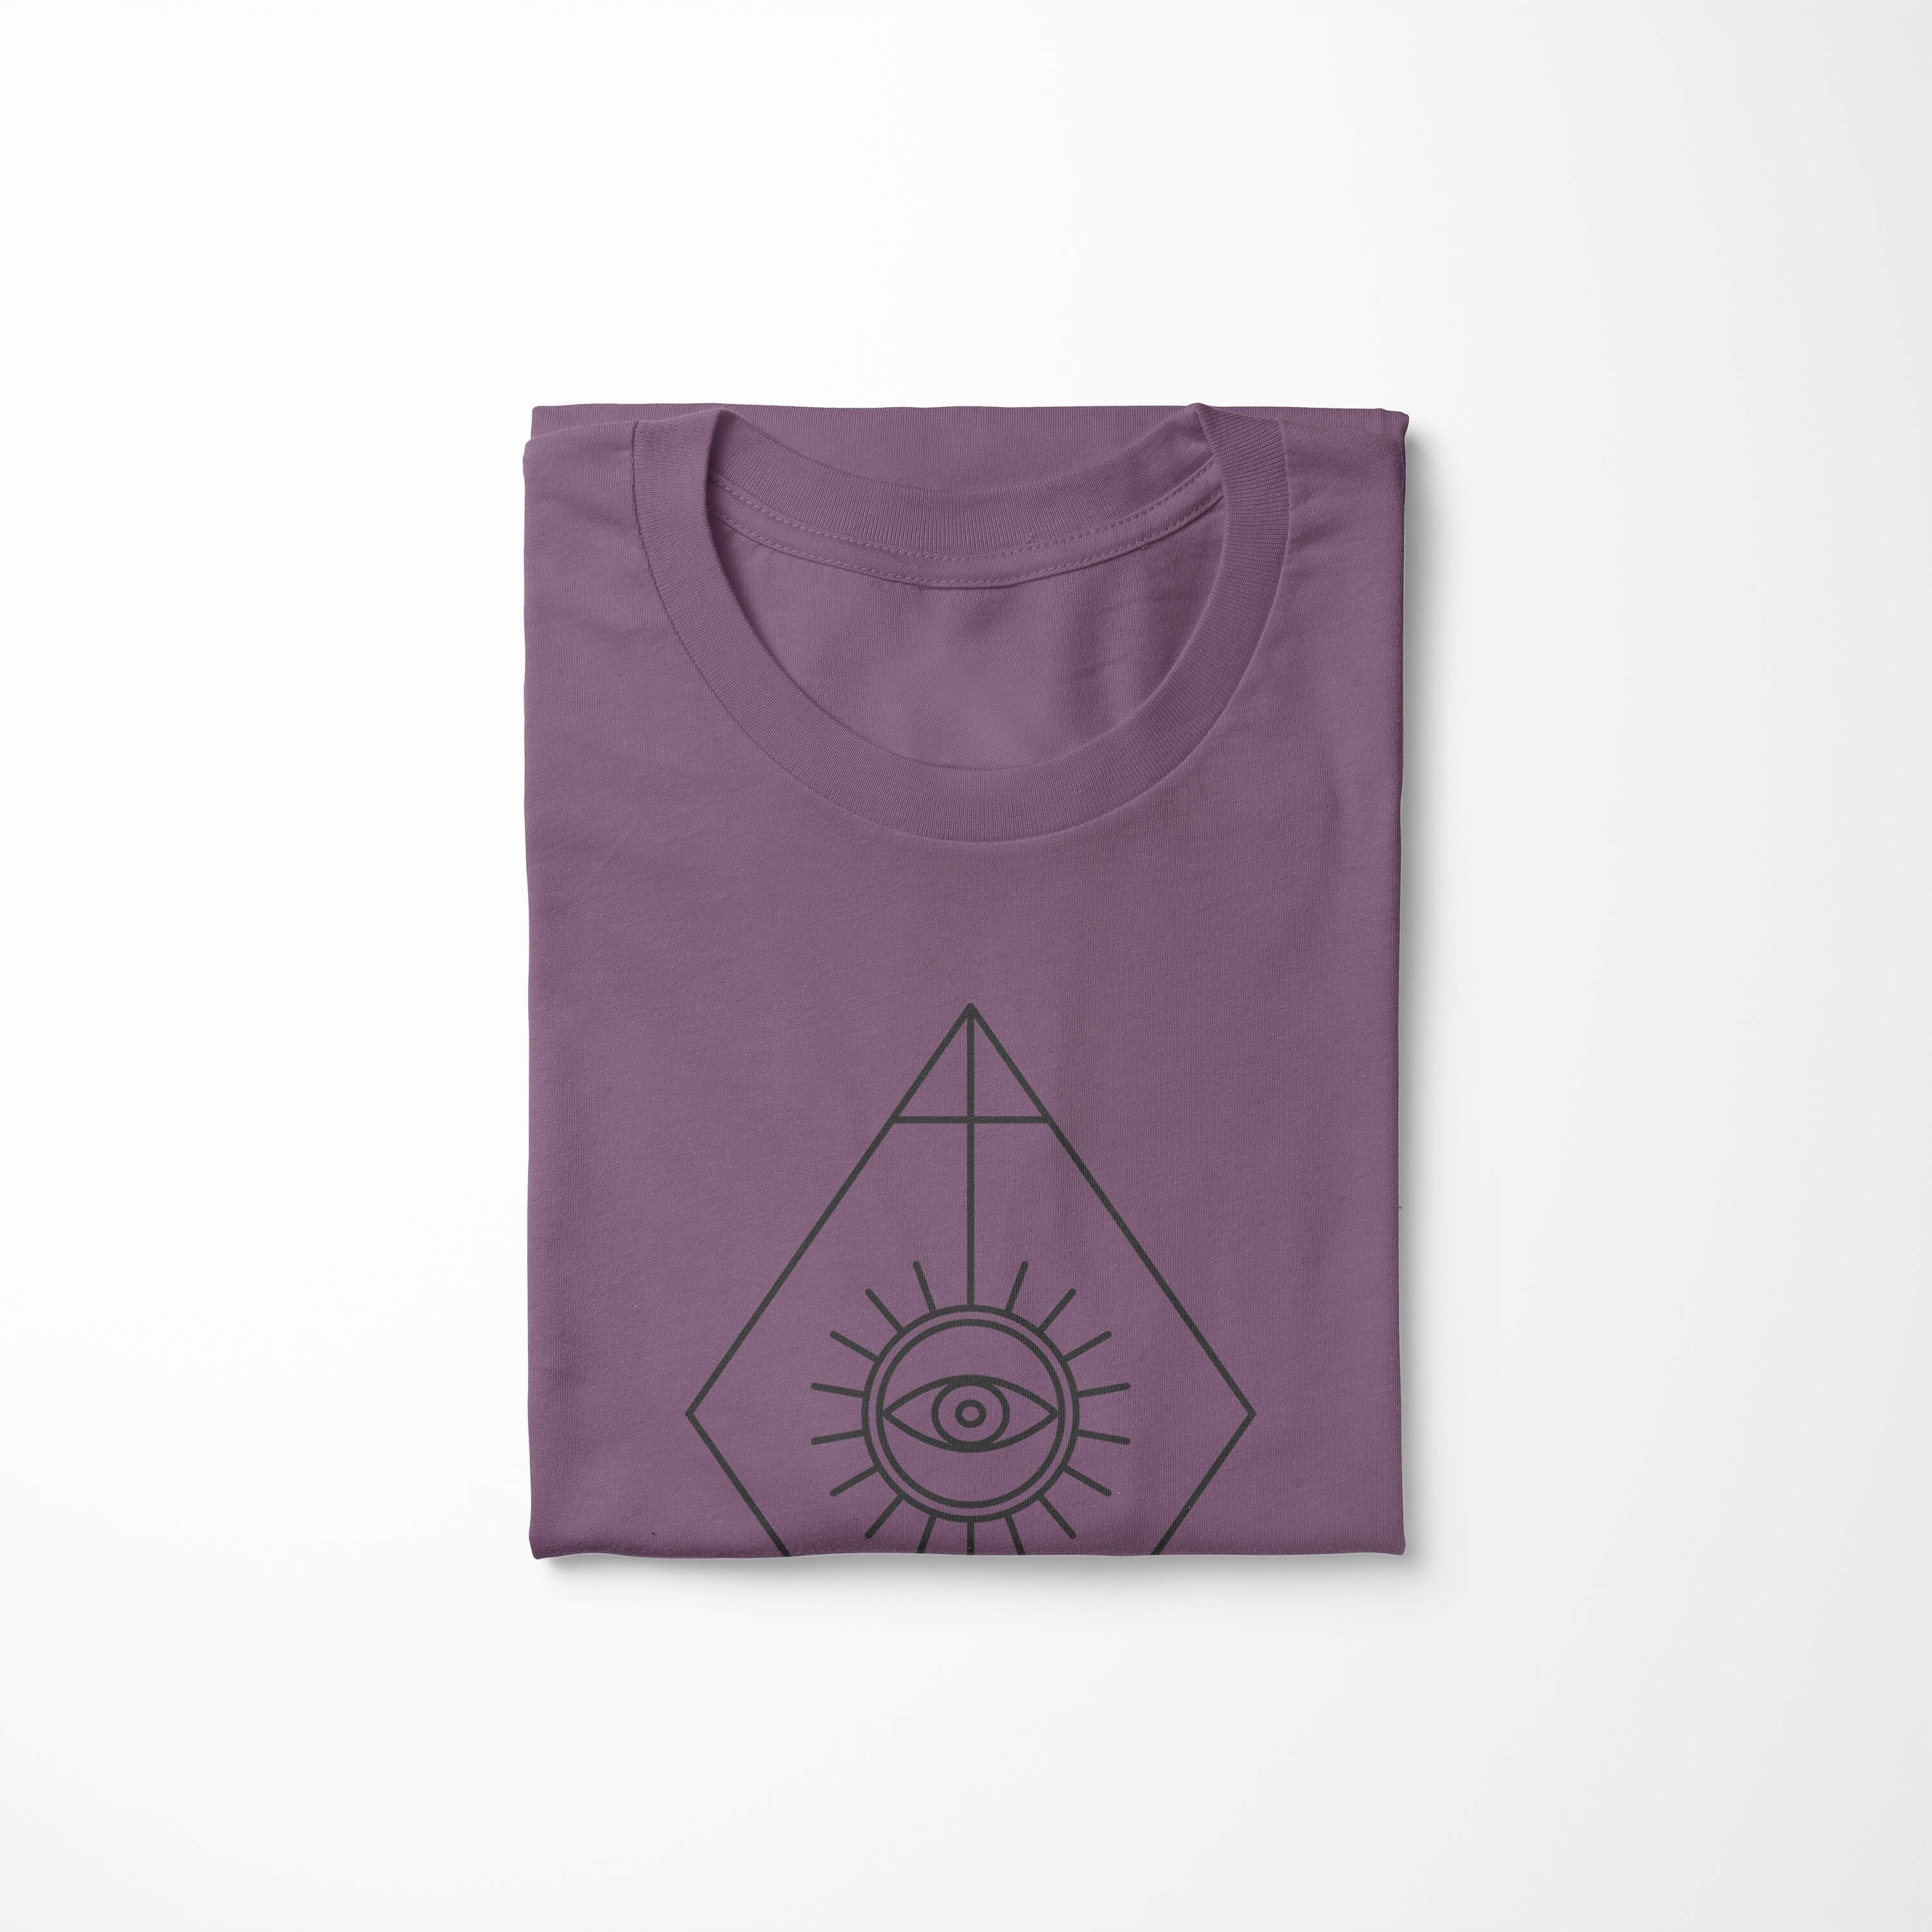 Sinus Art T-Shirt Premium T-Shirt No.0001 Symbole angenehmer Tragekomfort Shiraz feine Alchemy Struktur Serie